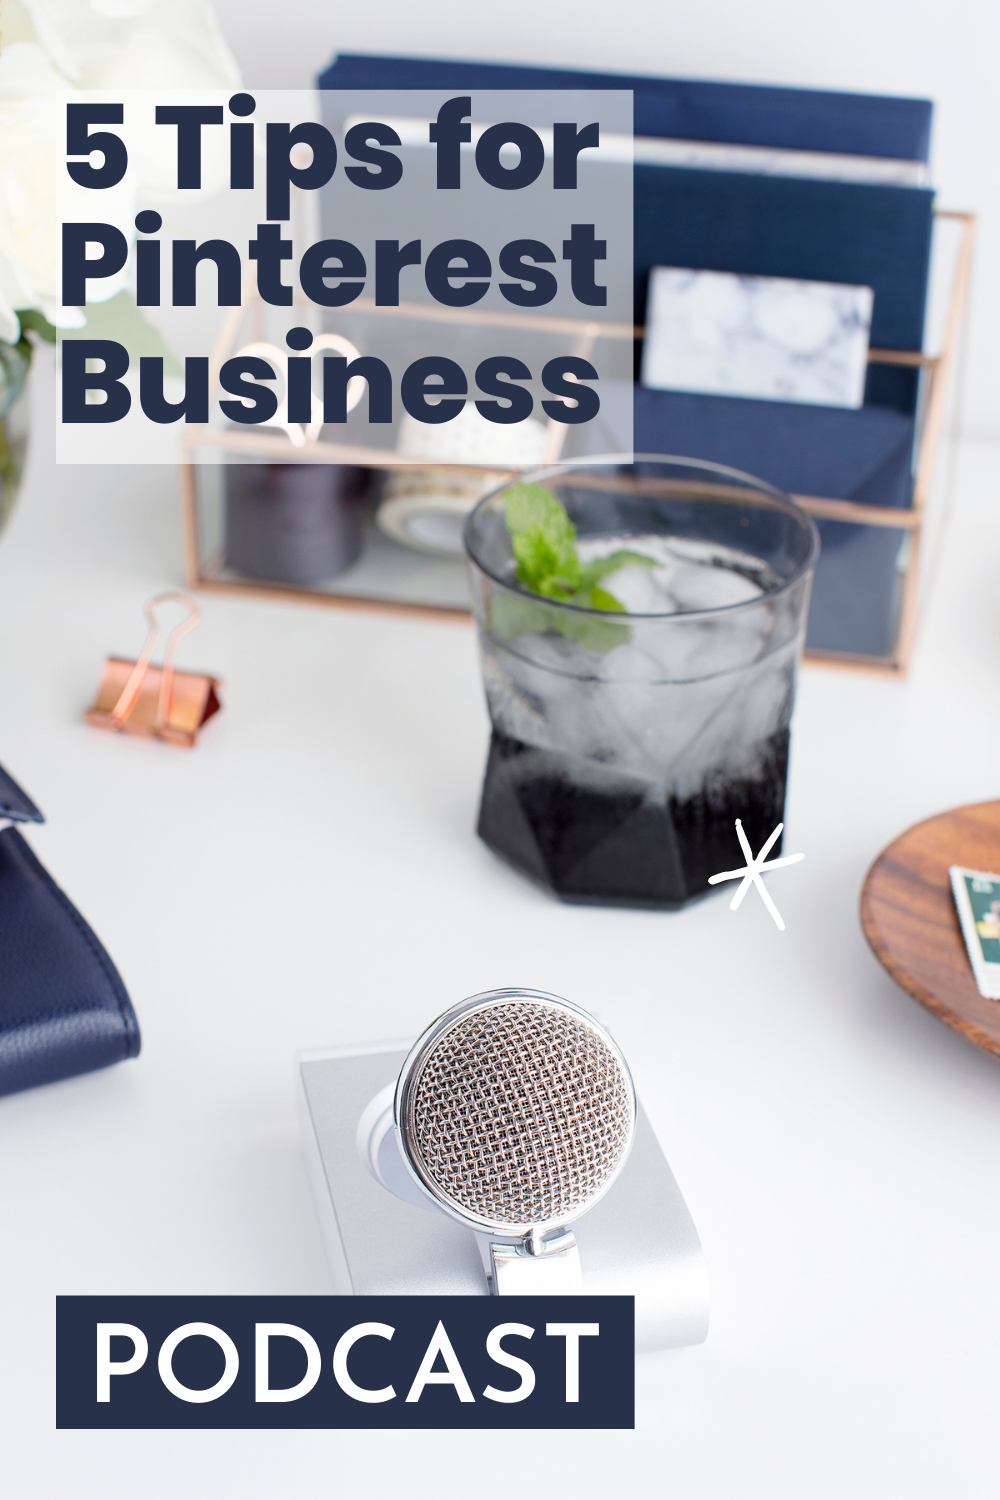 5 Tips for Pinterest Business